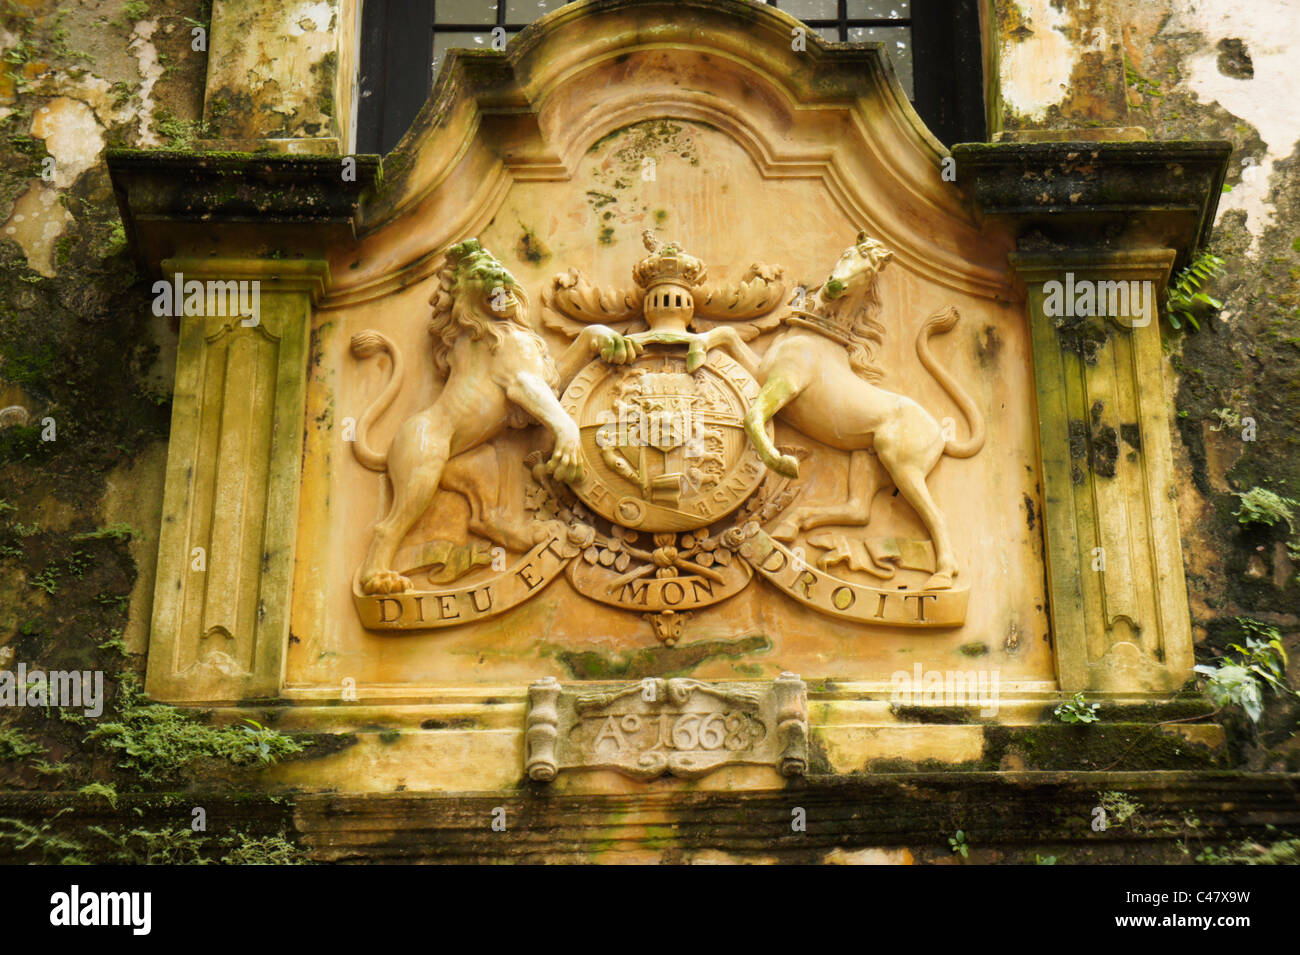 Stemma reale del Regno Unito con il è il motto del monarca britannico Dieu et mon droit presso il cancello di ingresso al centro storico Foto Stock